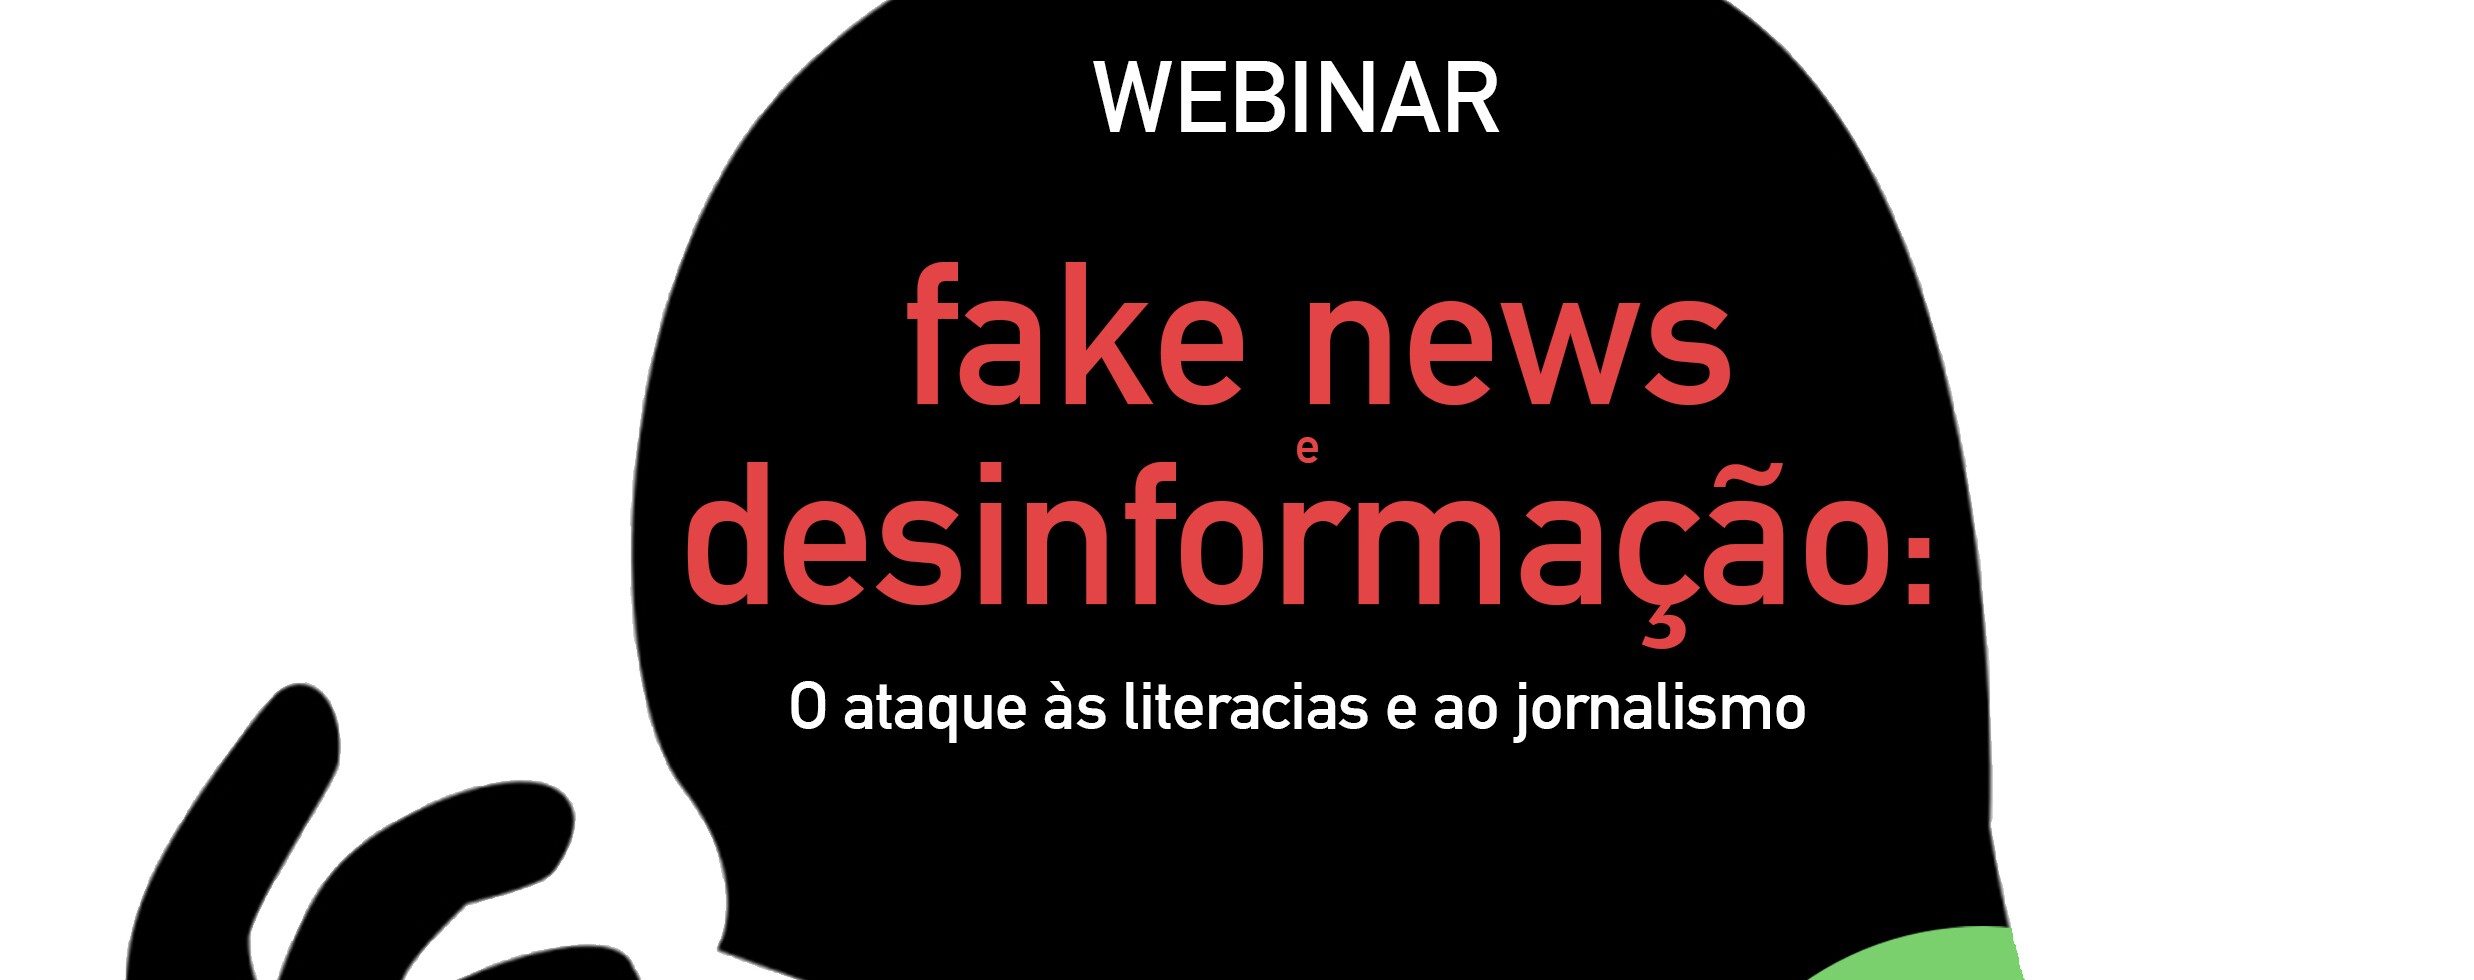 Webinar “Fake news e desinformação: o ataque às literacias e ao jornalismo"